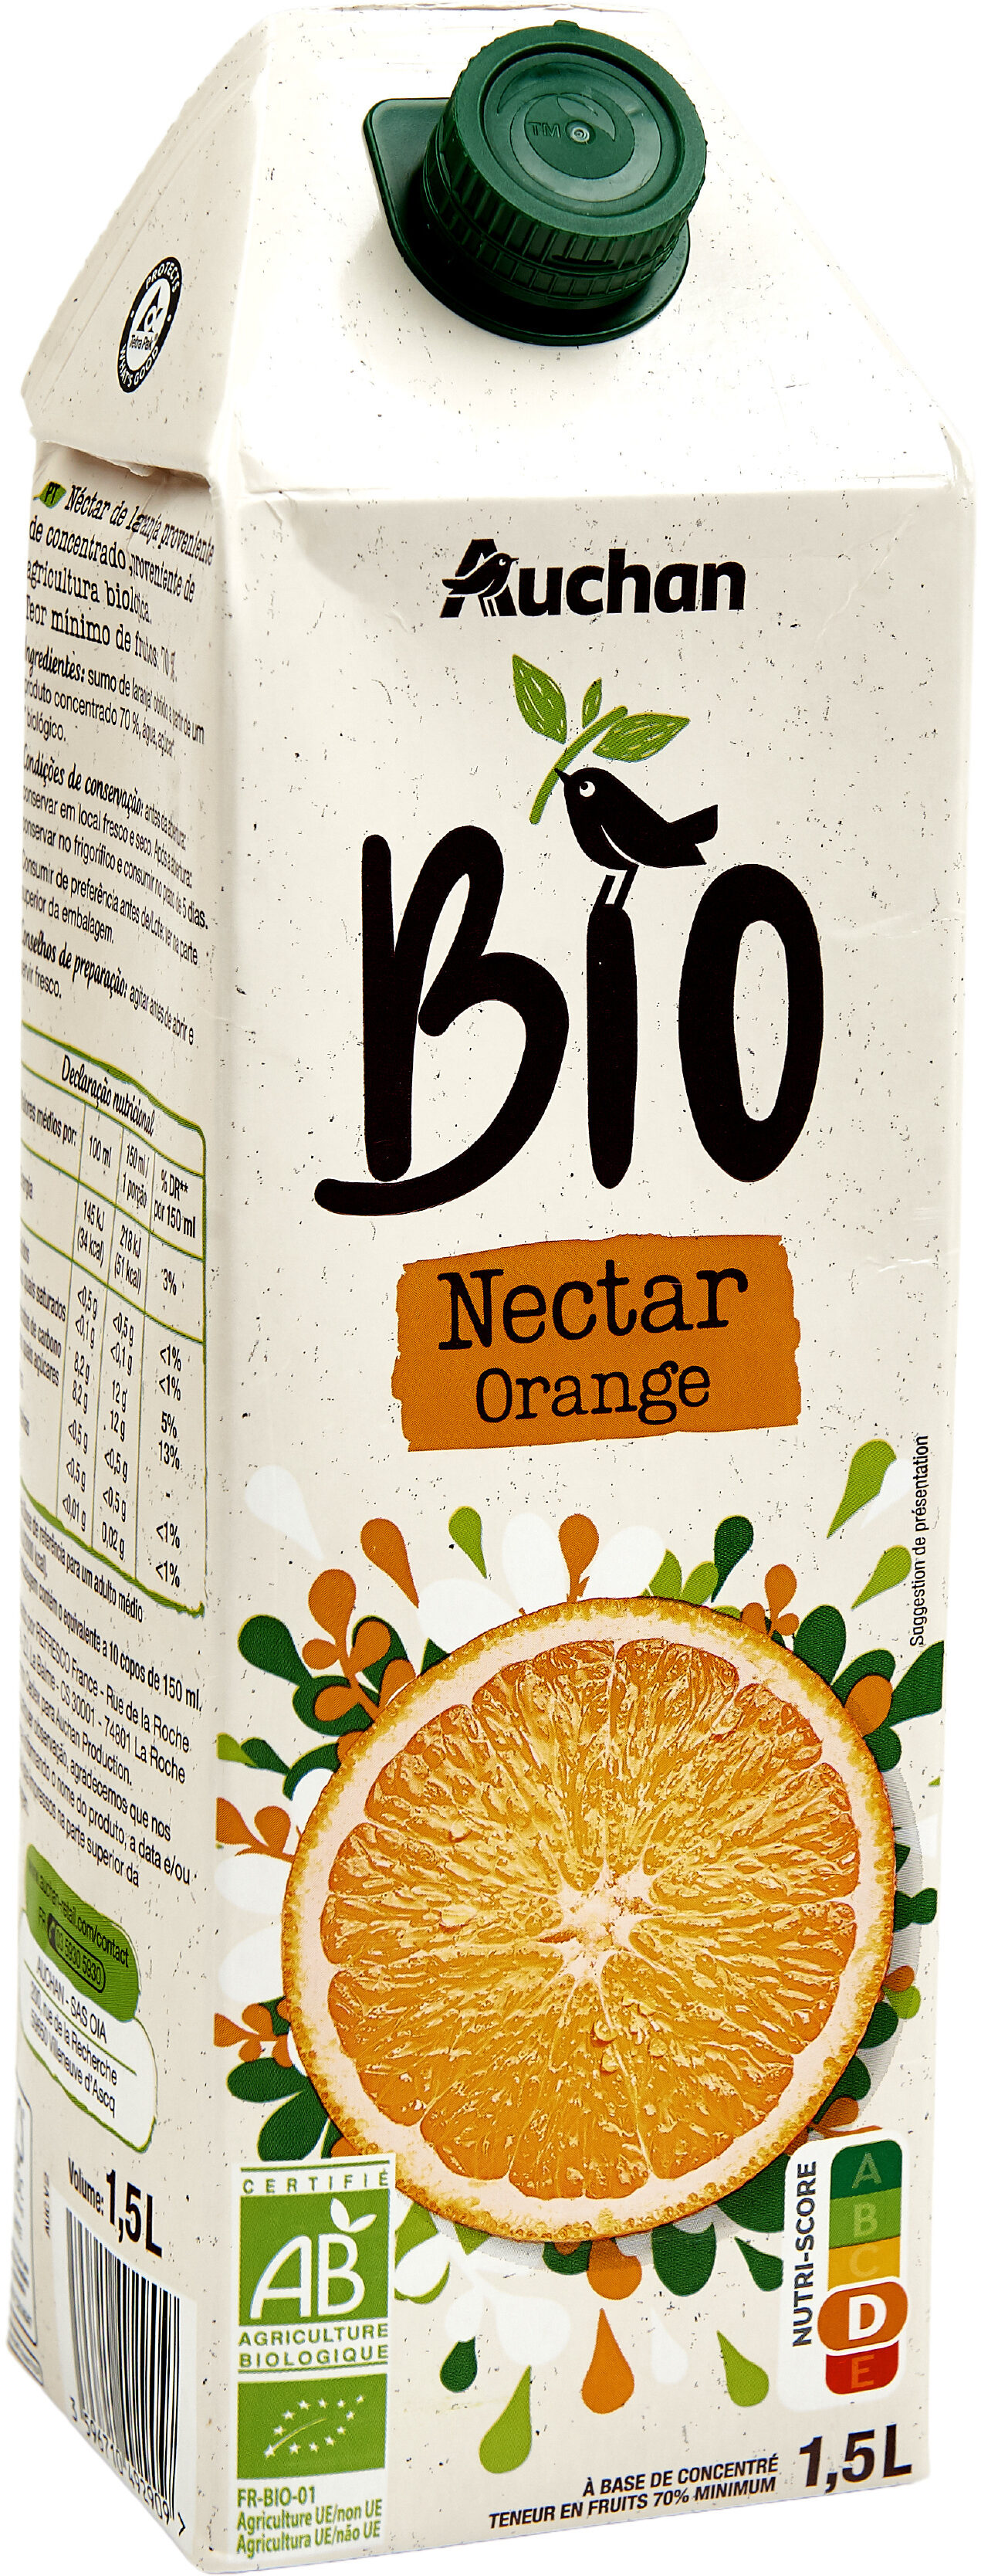 Nectar d'orange biologique. A base de concentré, Teneur en fruits : 70% minimum. - Product - fr